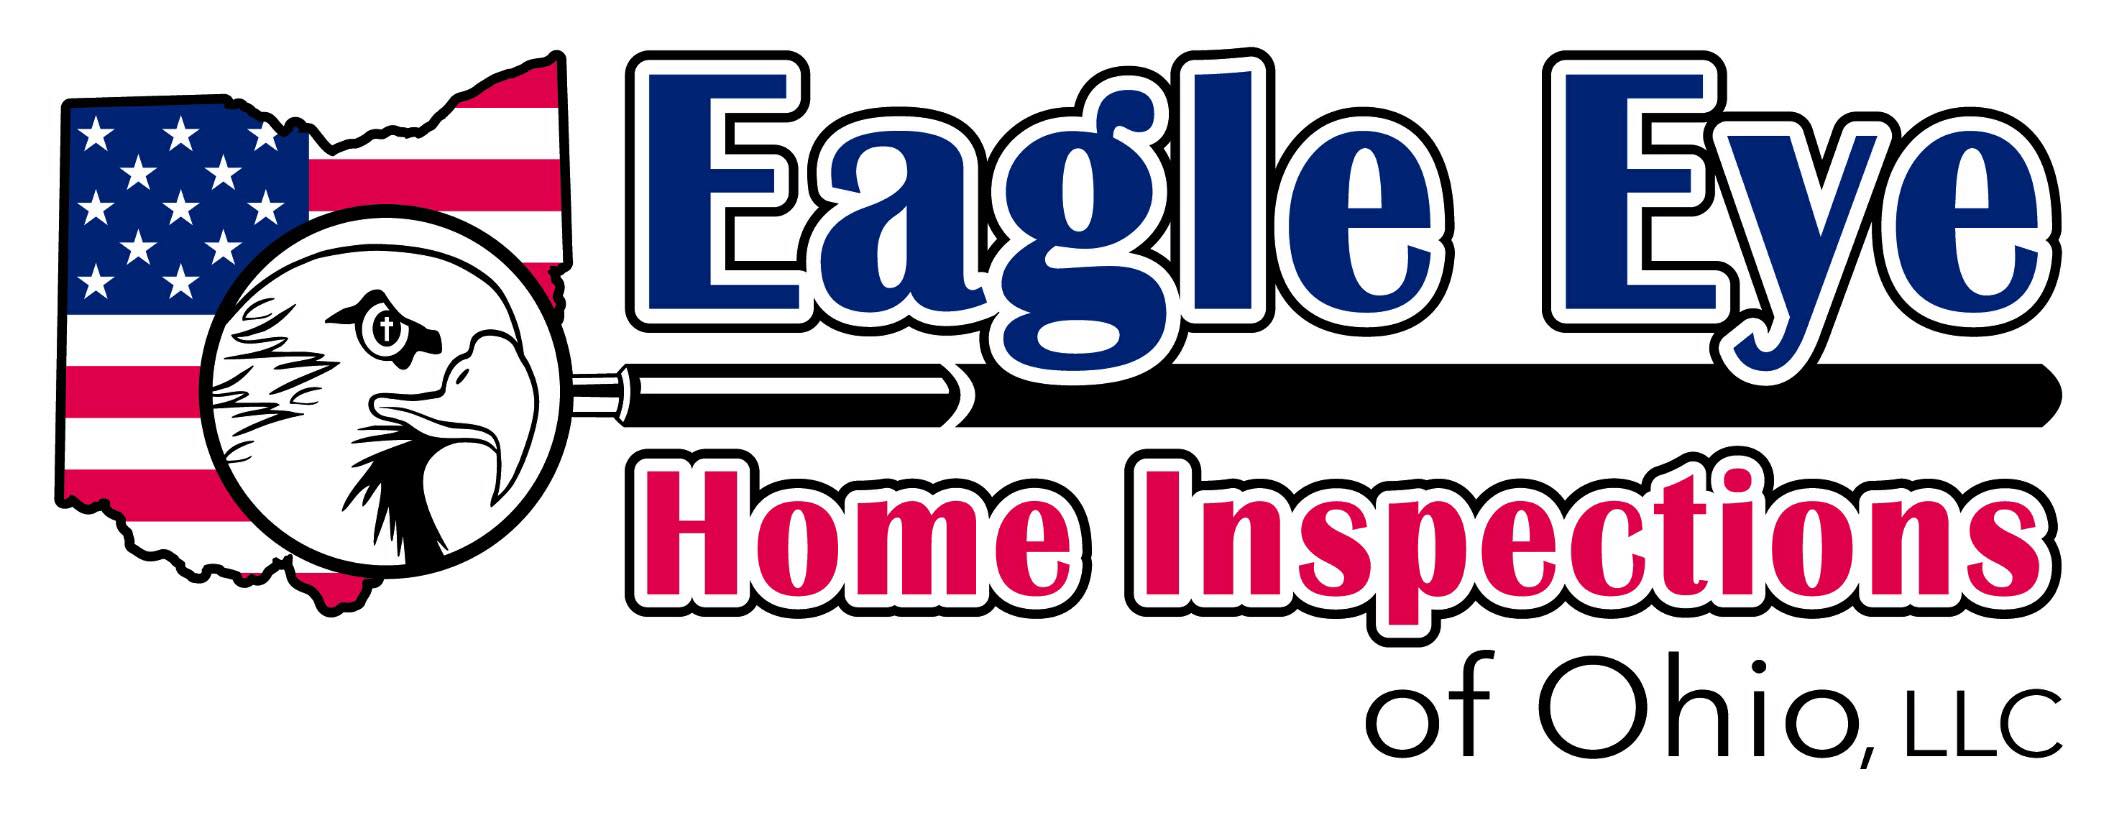 Eagle Eye Home Inspections of Ohio, LLC Logo